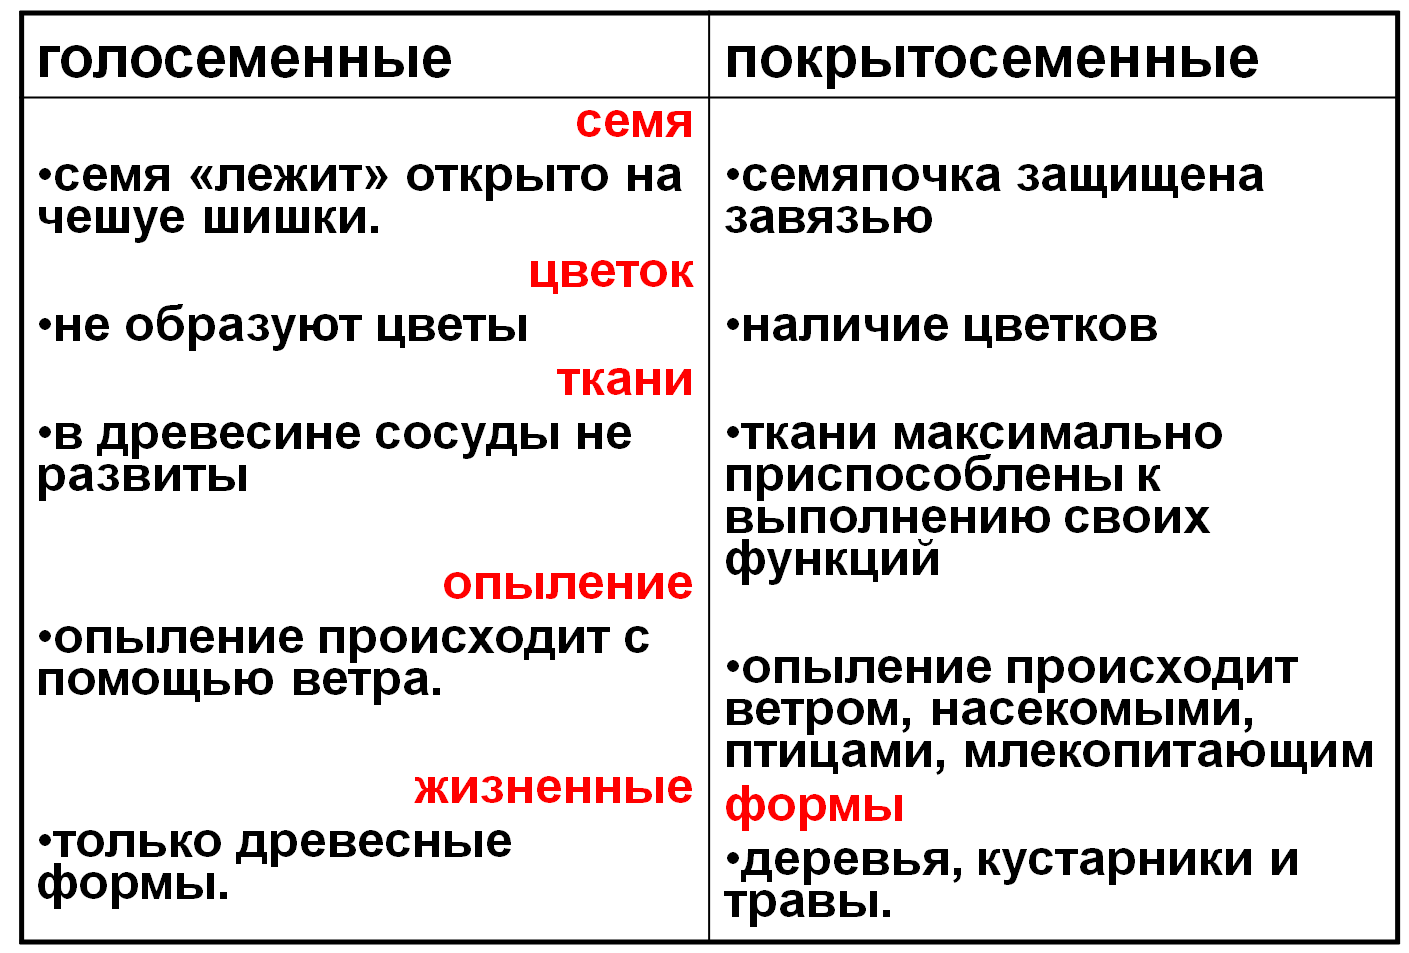 Признаки голосеменных растений 7 класс. Отличия голосеменных от покрытосеменных таблица. Общая характеристика голосеменных и покрытосеменных таблица. Основные признаки голосеменных растений 6 класс. Различия голосеменных и покрытосеменных таблица.